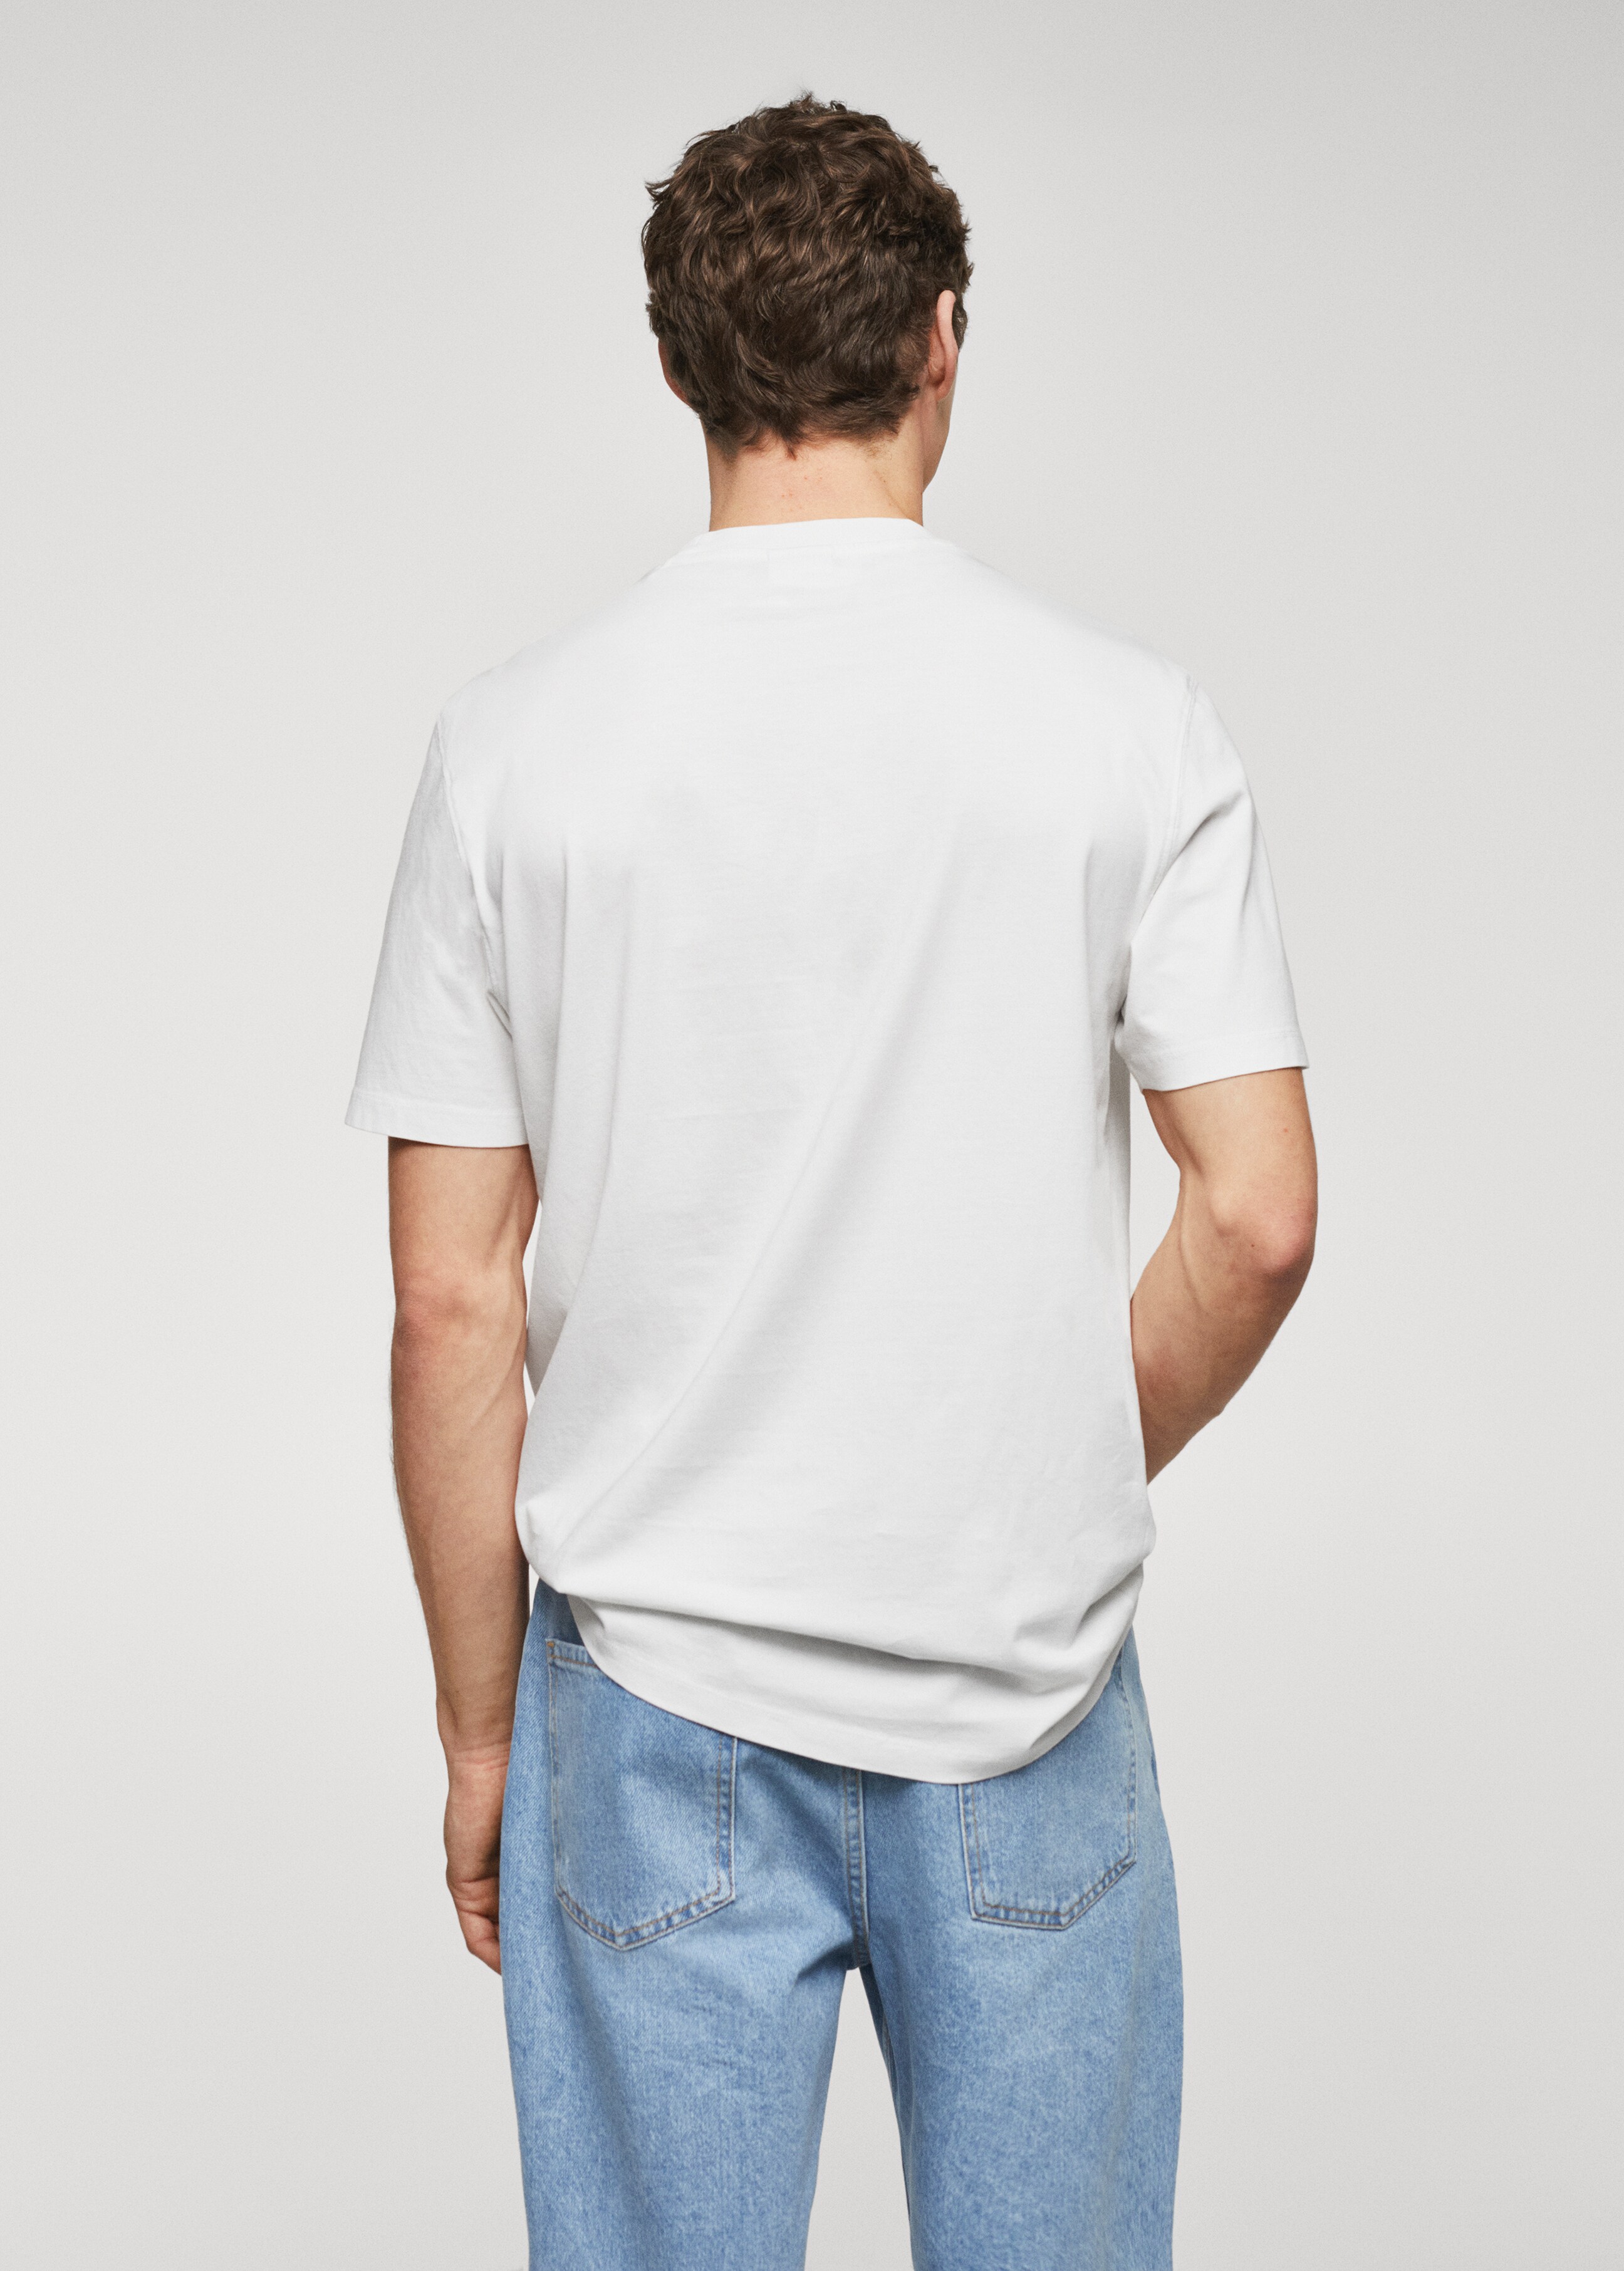 Camiseta 100% algodón texto - Reverso del artículo